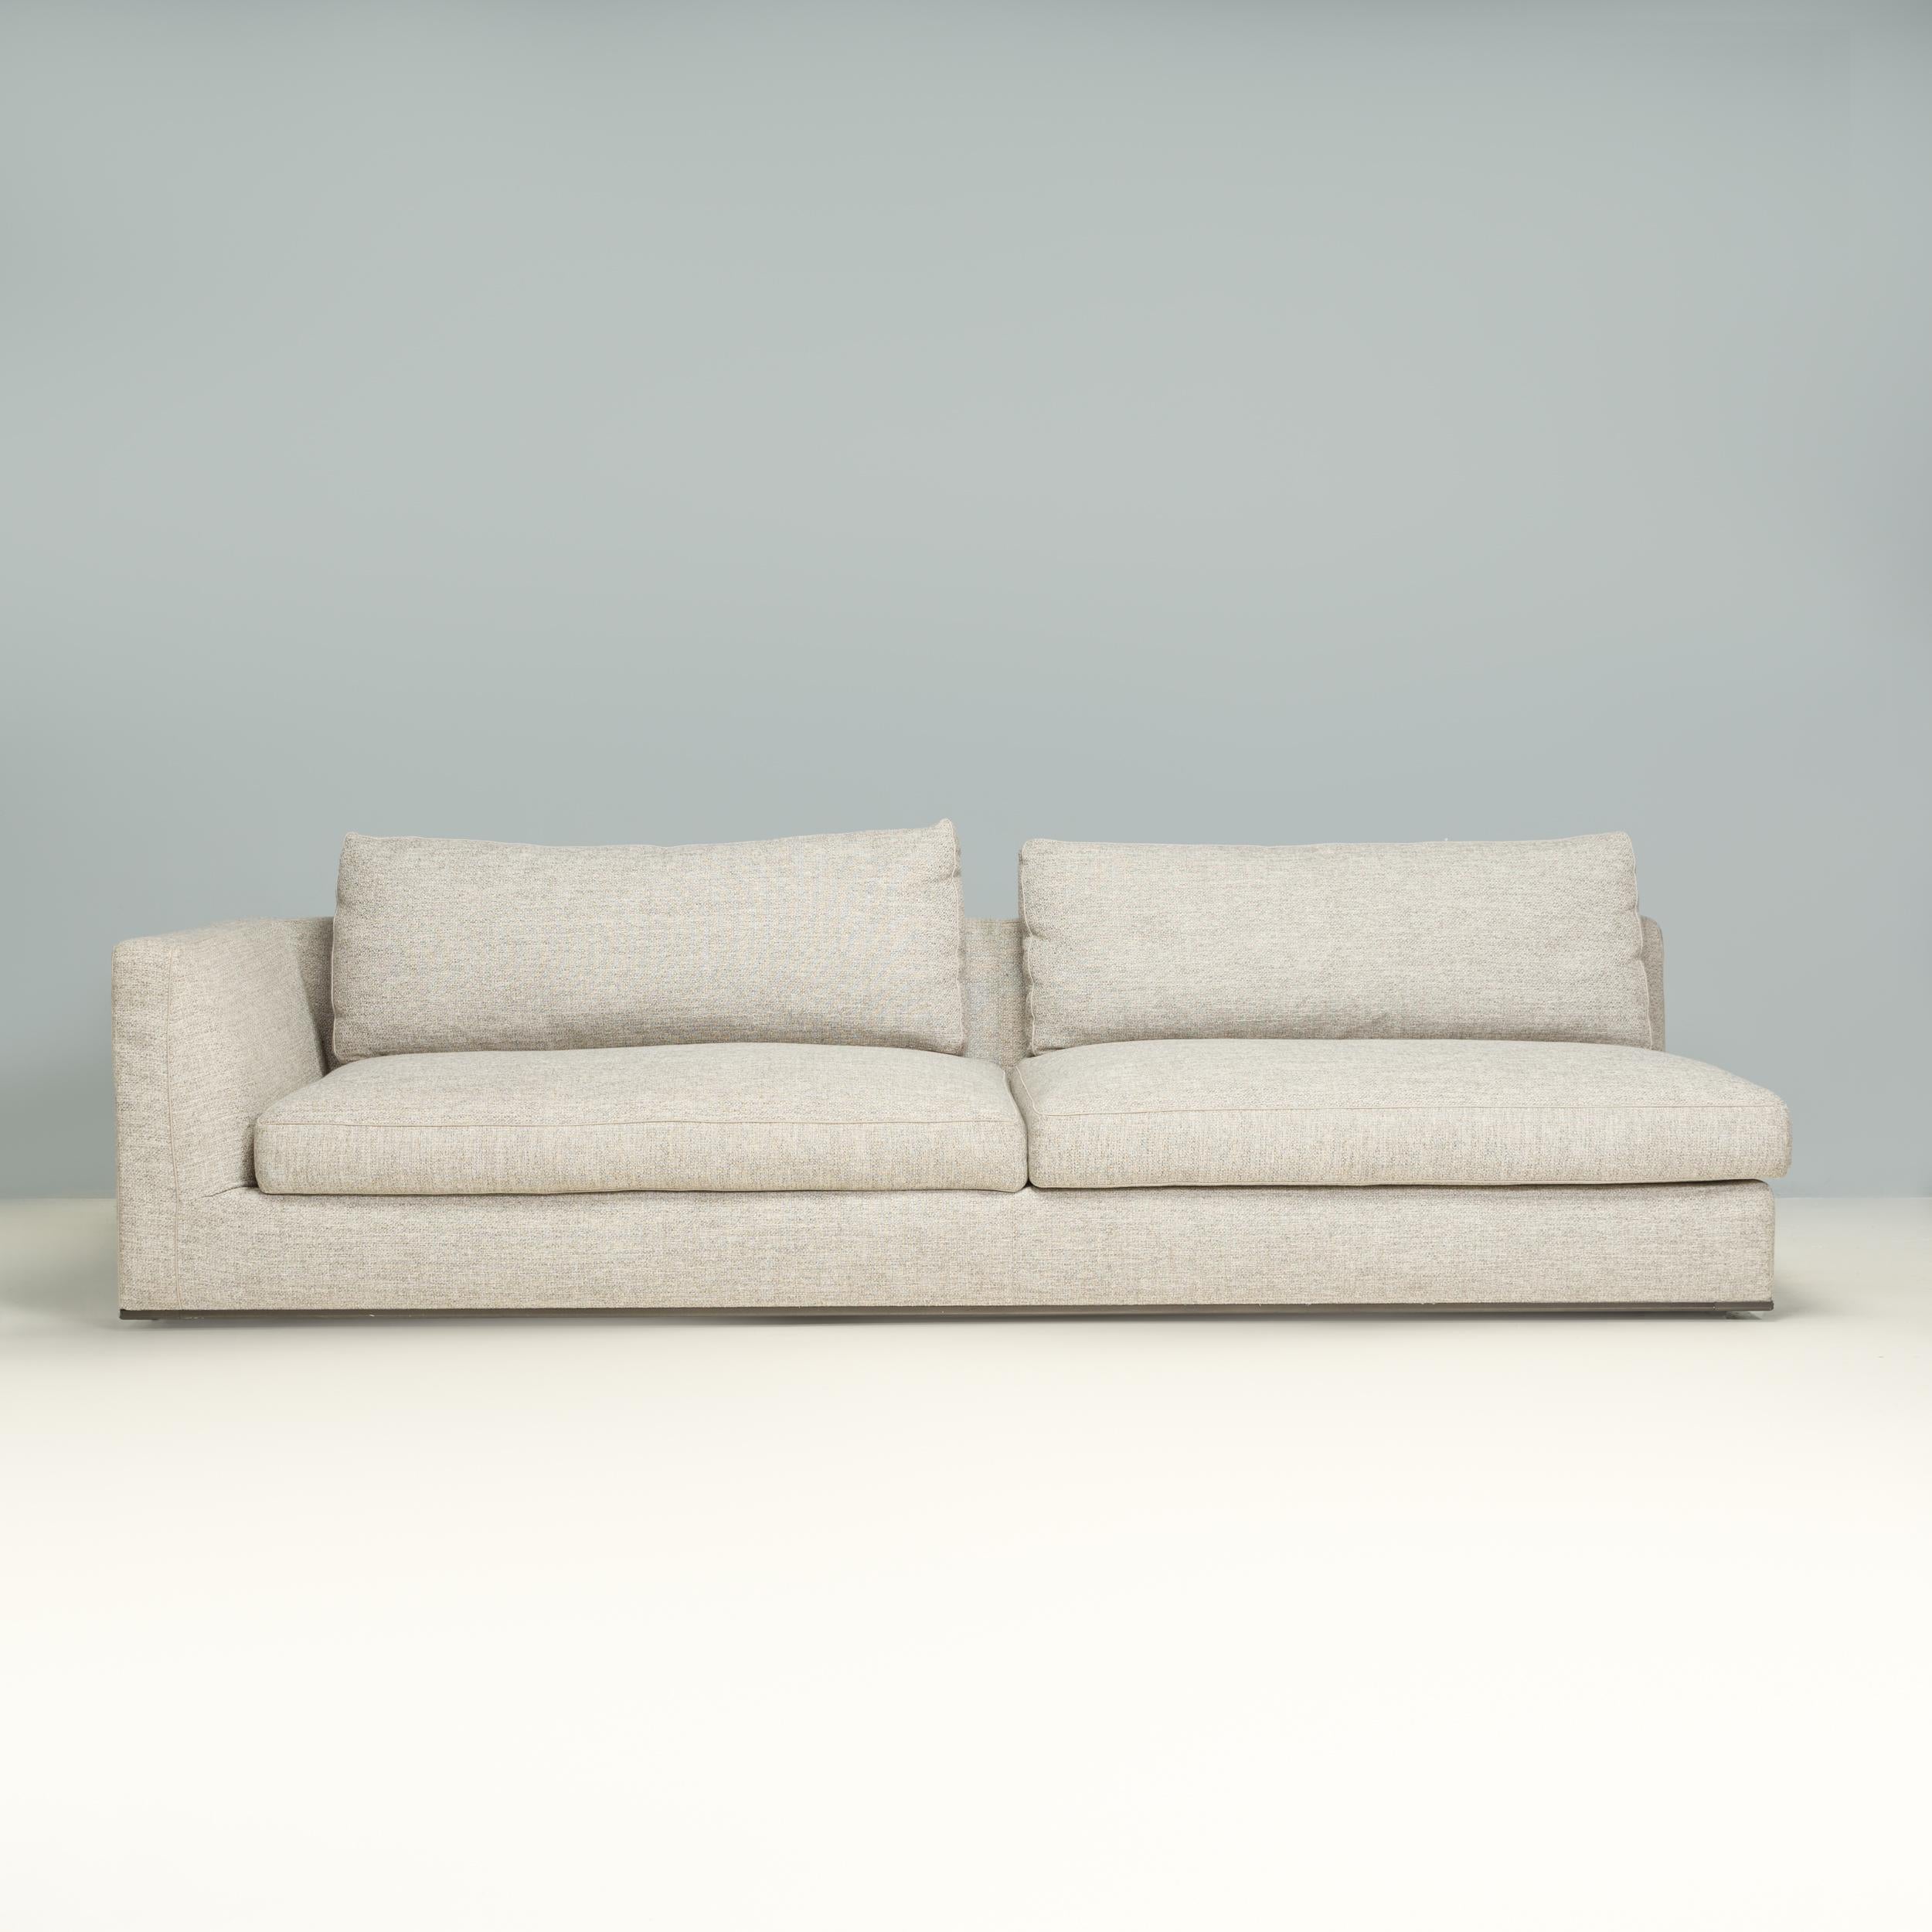 Conçu à l'origine par Antonio Citterio pour B&B Italia en 2016, le canapé Richard est un exemple fantastique de design italien contemporain.

Le canapé sectionnel a une configuration d'angle avec des modules séparés de canapé à deux places et un